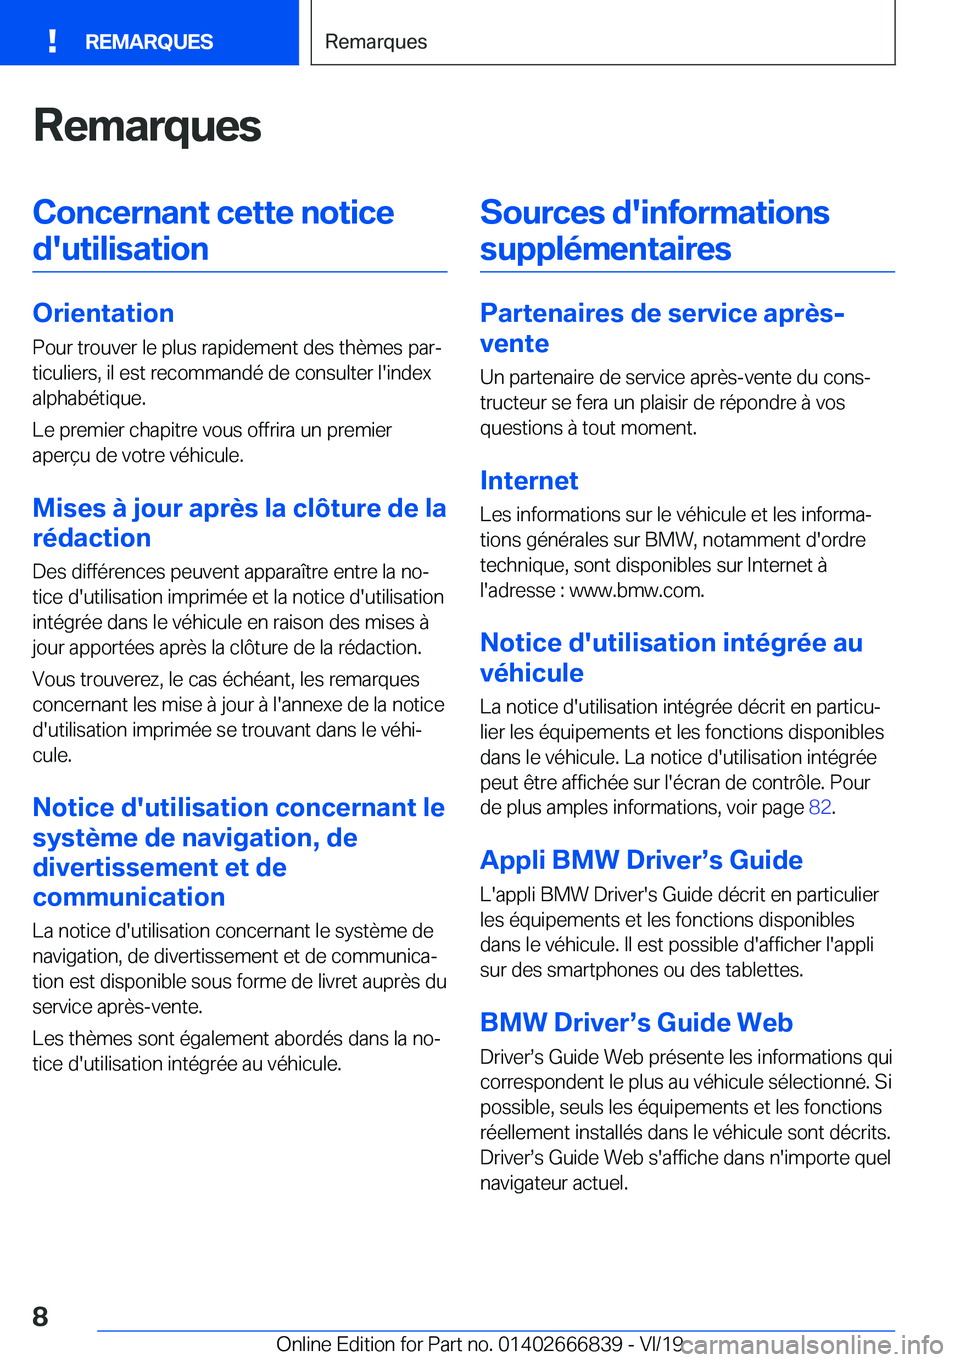 BMW X3 M 2020  Notices Demploi (in French) �R�e�m�a�r�q�u�e�s�C�o�n�c�e�r�n�a�n�t��c�e�t�t�e��n�o�t�i�c�e�d�'�u�t�i�l�i�s�a�t�i�o�n
�O�r�i�e�n�t�a�t�i�o�n �P�o�u�r��t�r�o�u�v�e�r��l�e��p�l�u�s��r�a�p�i�d�e�m�e�n�t��d�e�s��t�h�è�m�